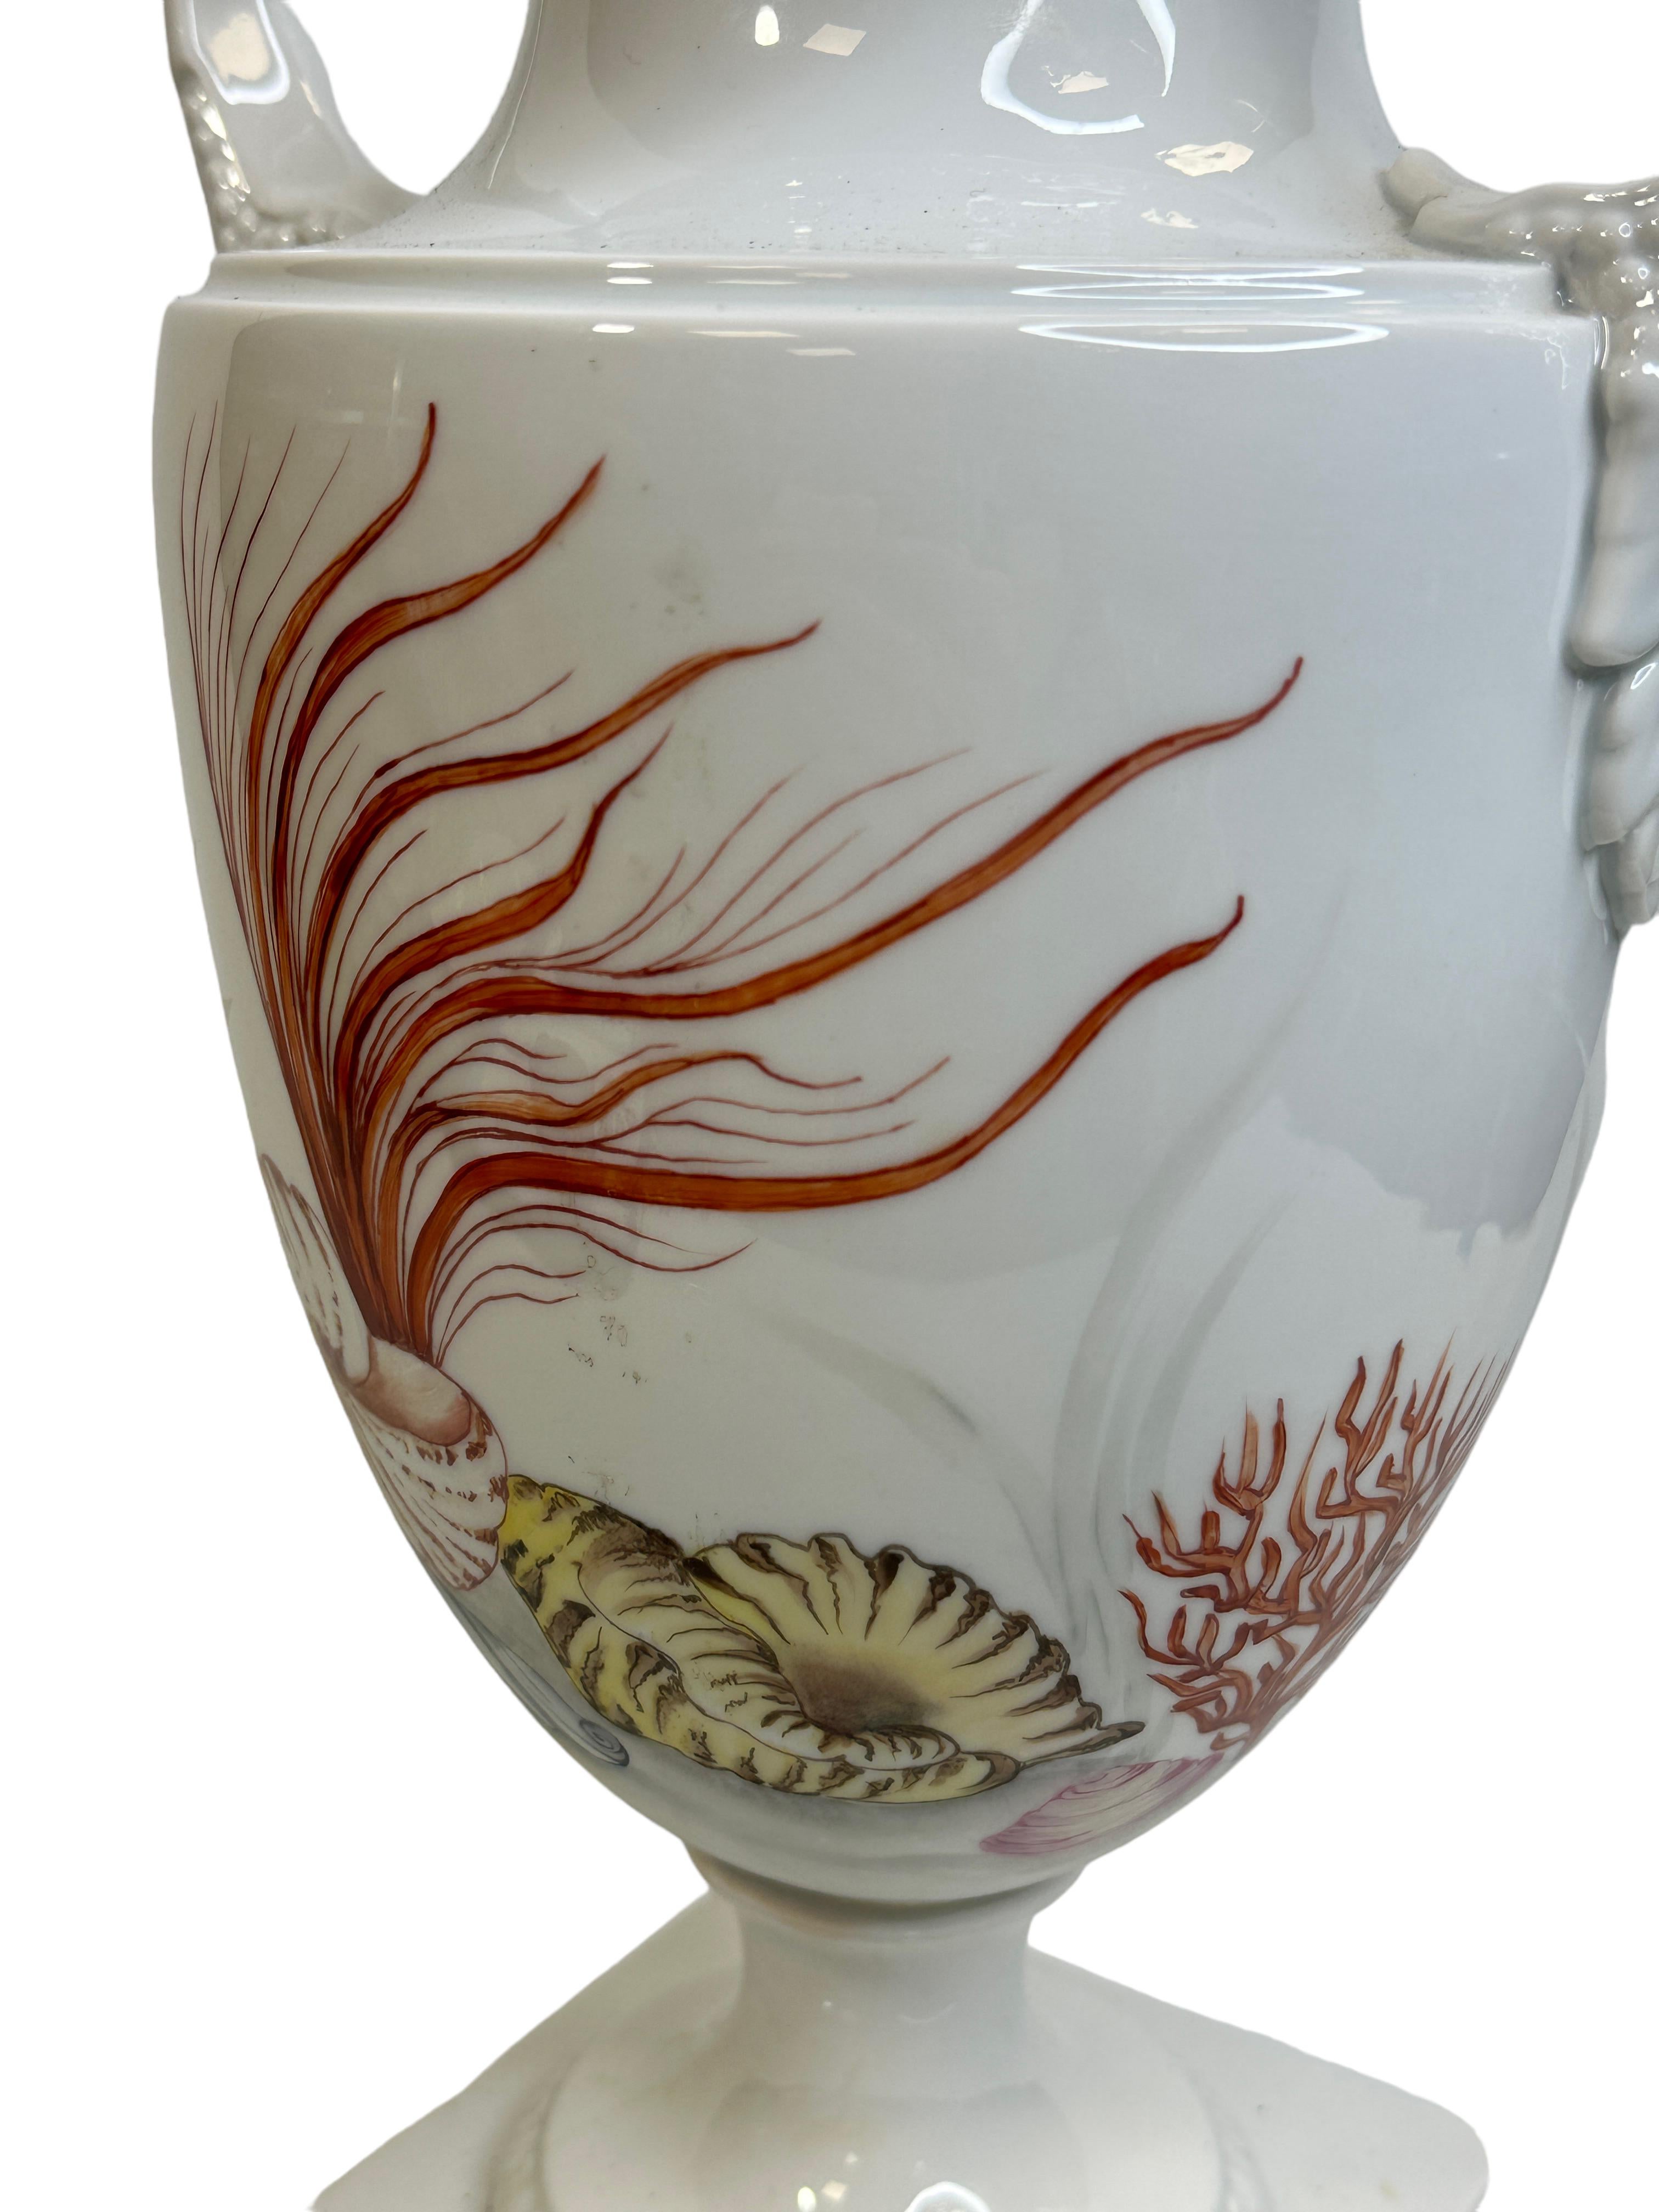 Amphora lidded Vase with Sea Creatures Motif by Lindner Porcelain vintage 1960s For Sale 3